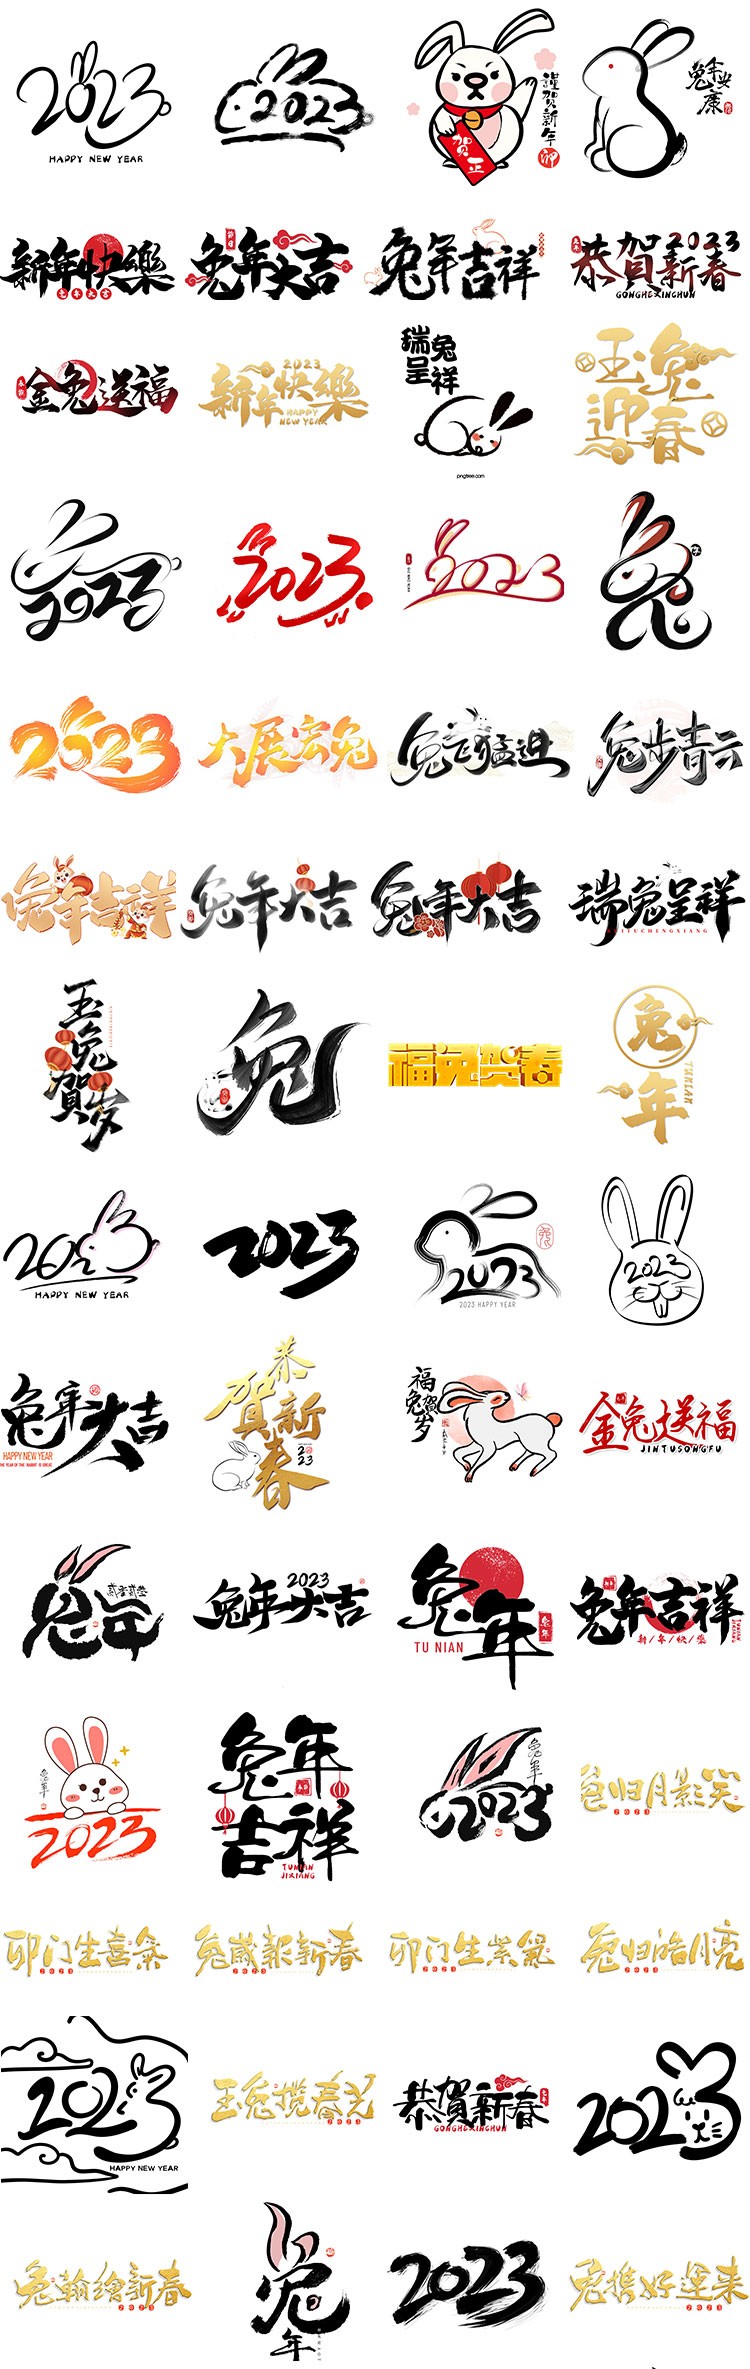 260+兔年新年祝福书法字标设计素材合集 设计素材 第1张